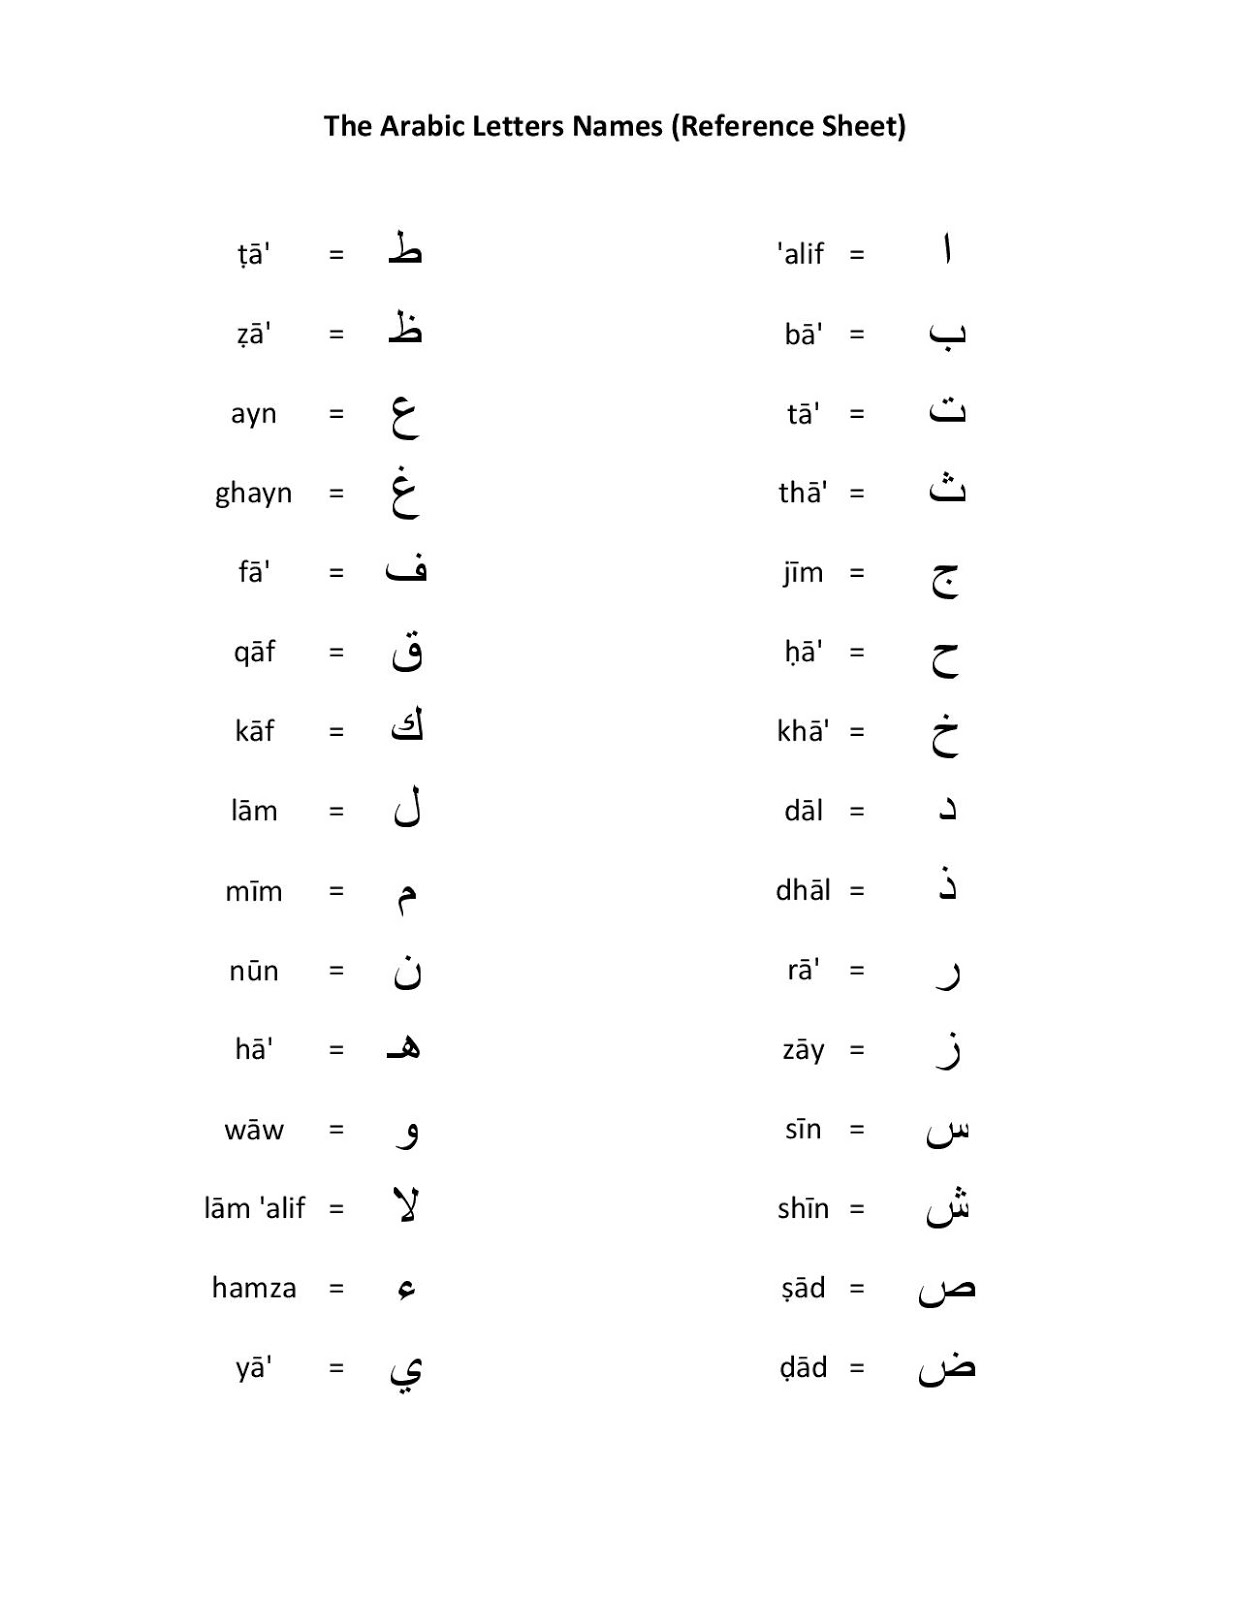 11-best-images-of-mixed-alphabet-worksheets-arabic-alphabet-letters-worksheets-improper